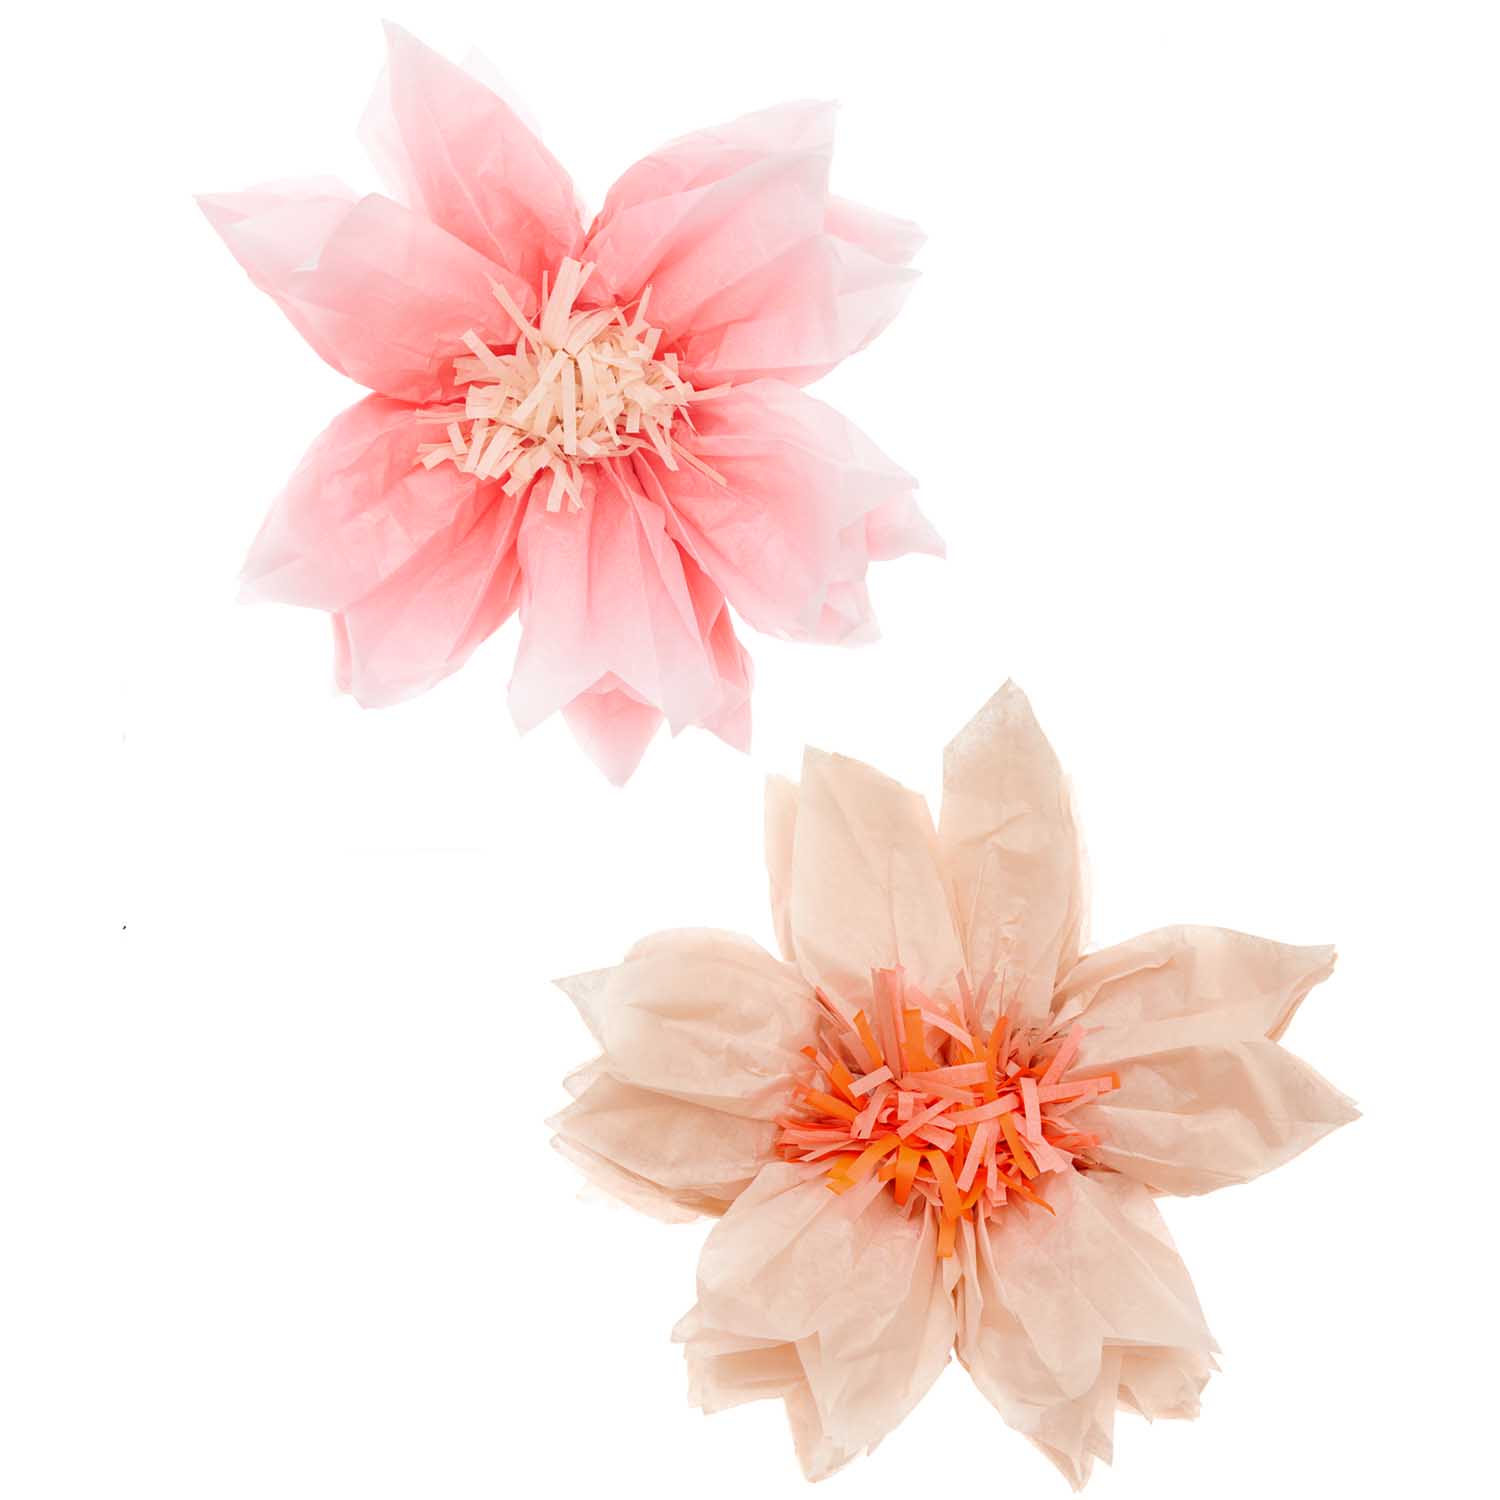 Tissue kersen bloemen zacht roze zacht orange decoratie feest verjaardag